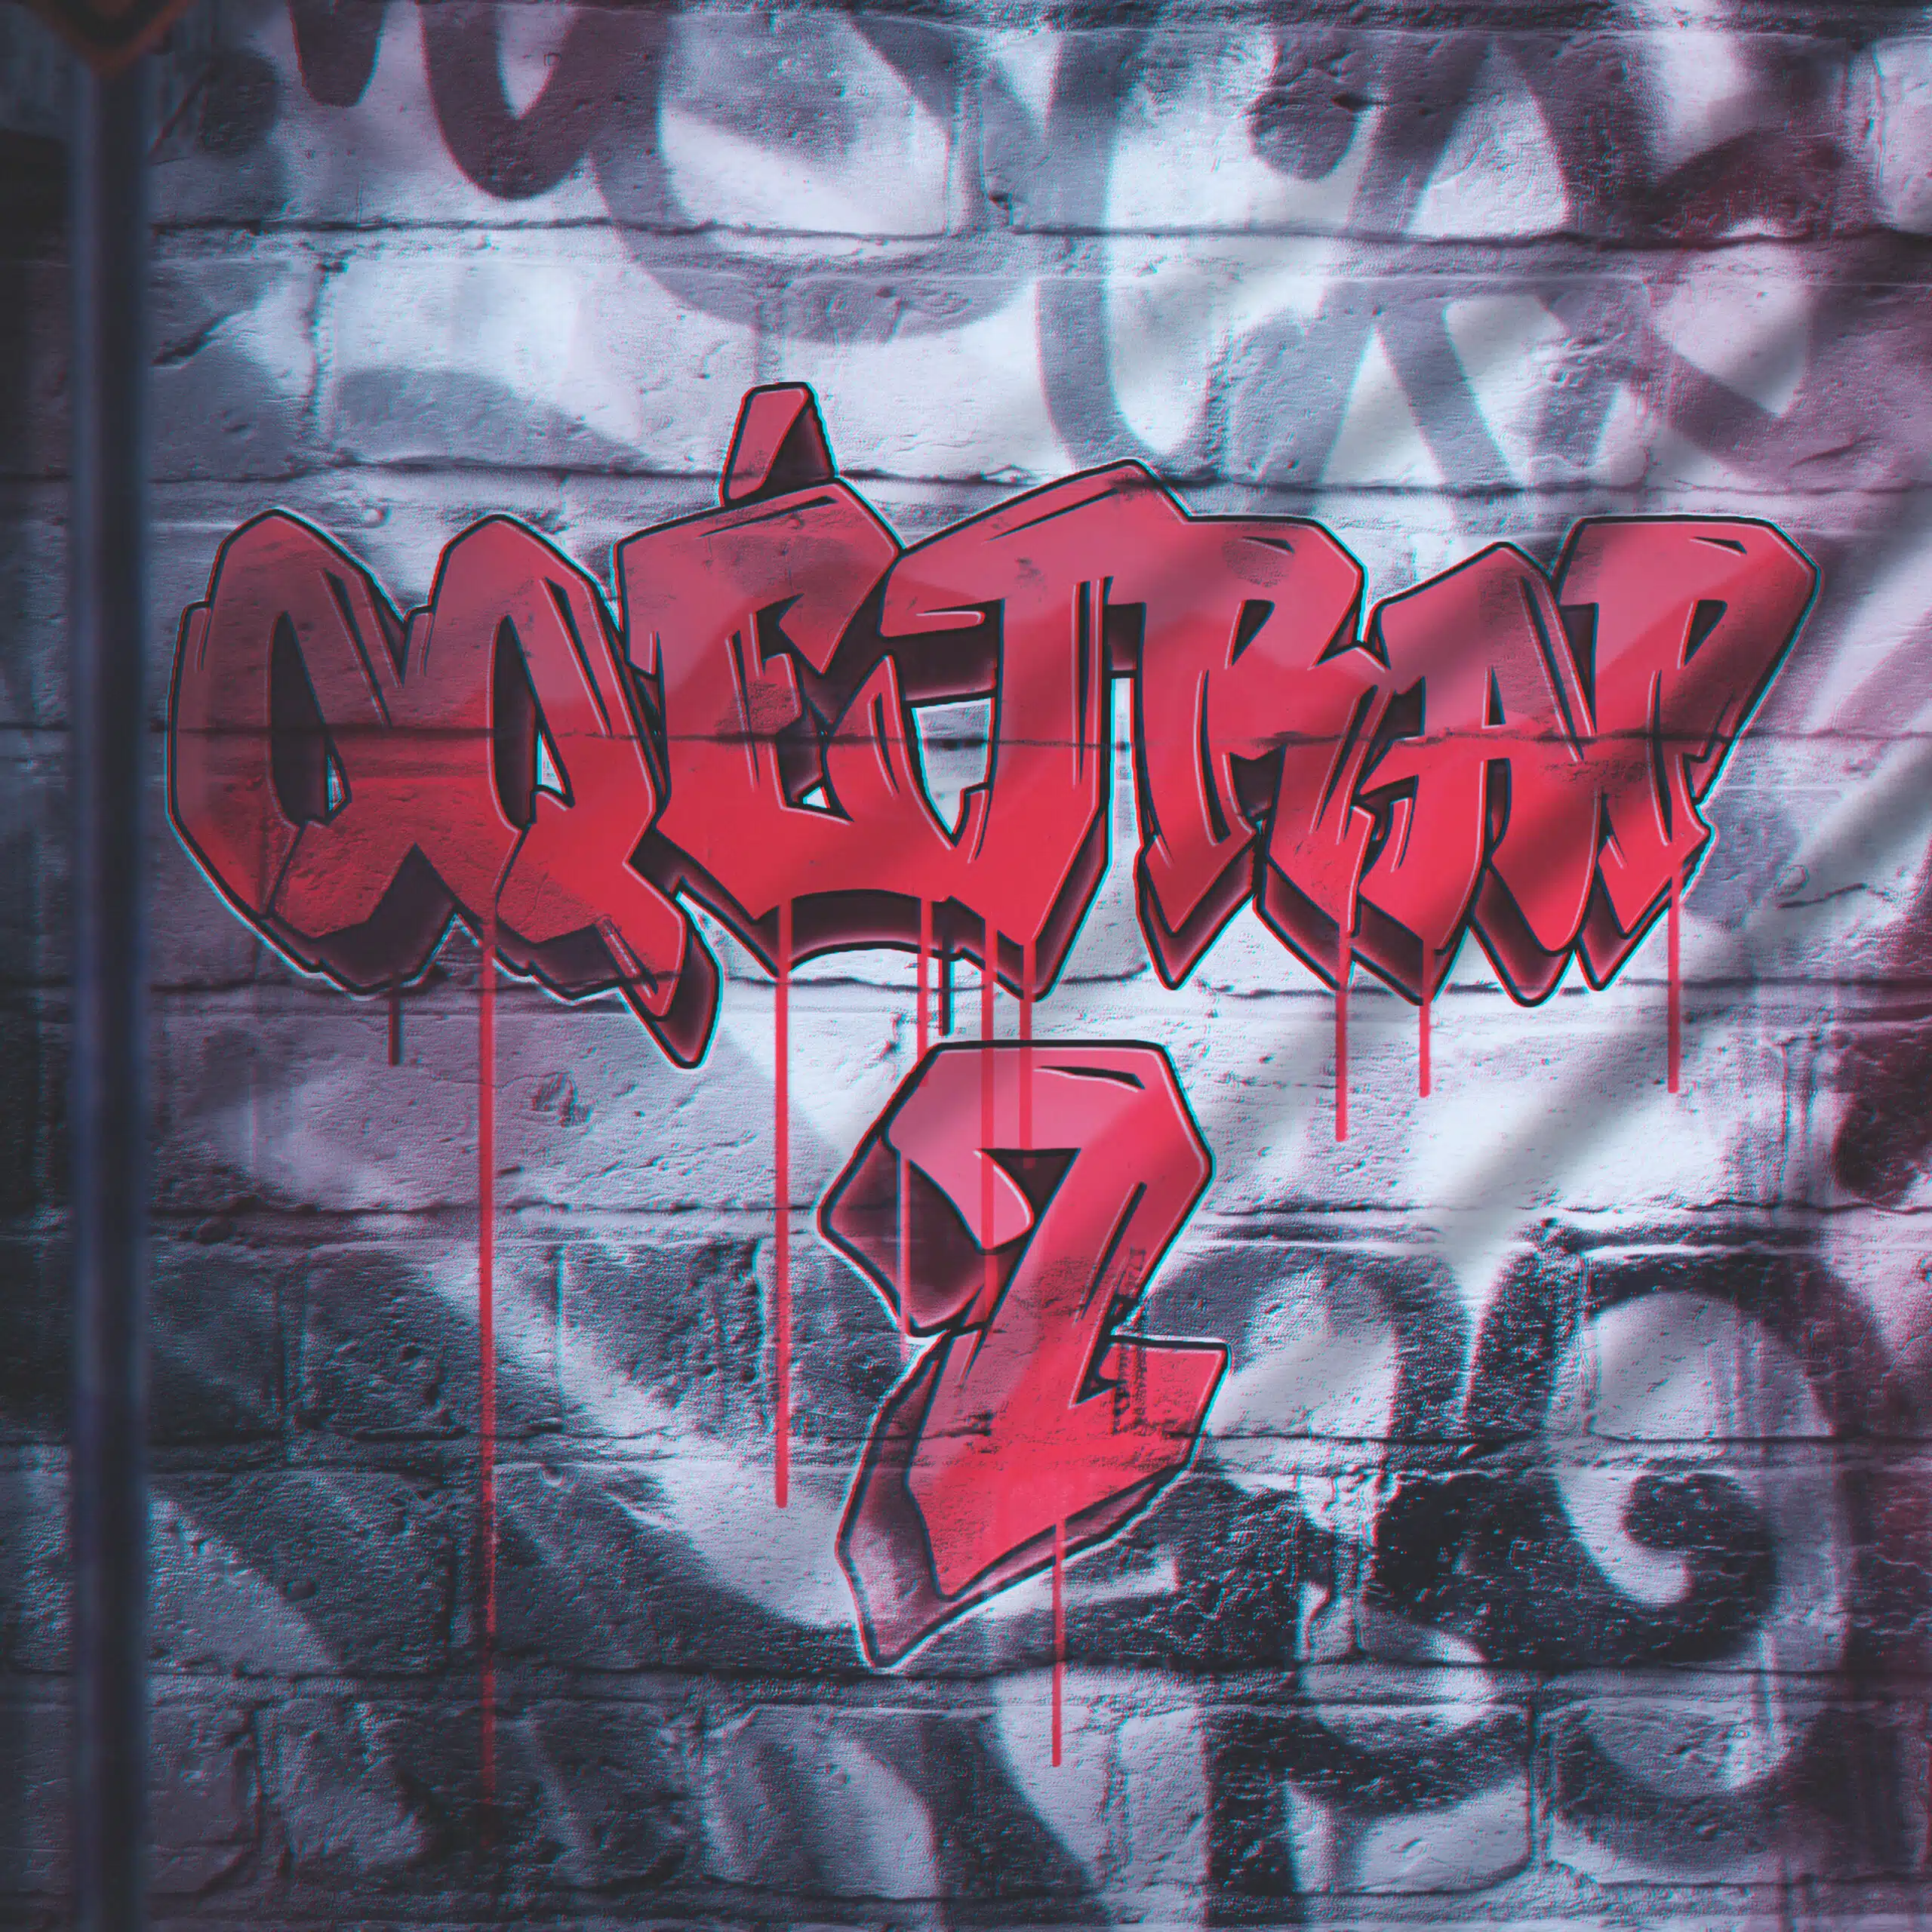 Ygrick estreia nesta sexta-feira (12.04) a música “OQÉTRAP 2”